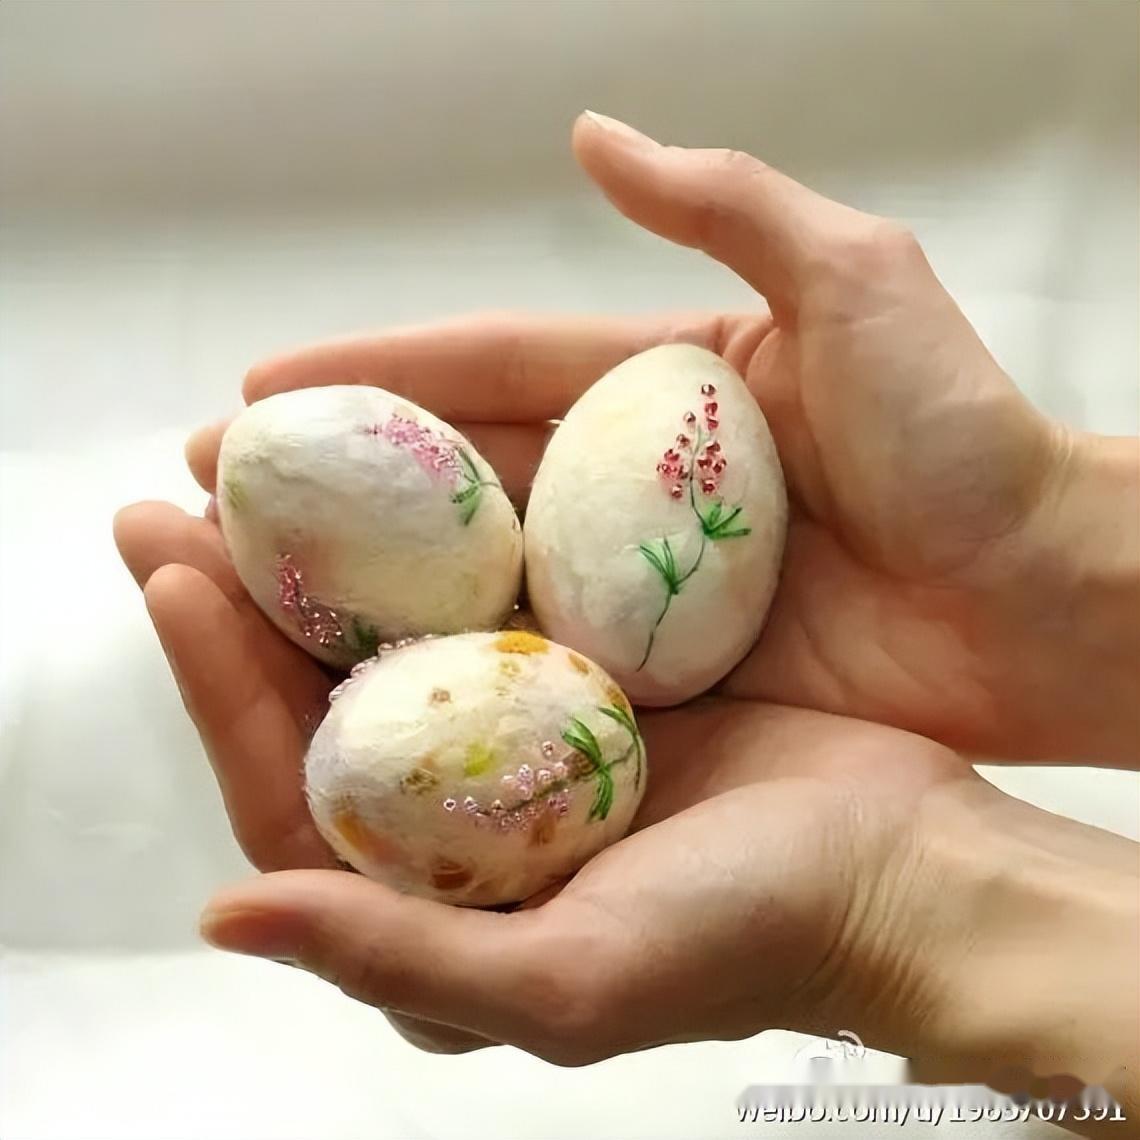 冰城蛋雕师高立峰：蛋壳上雕刻时光留住易碎的美好